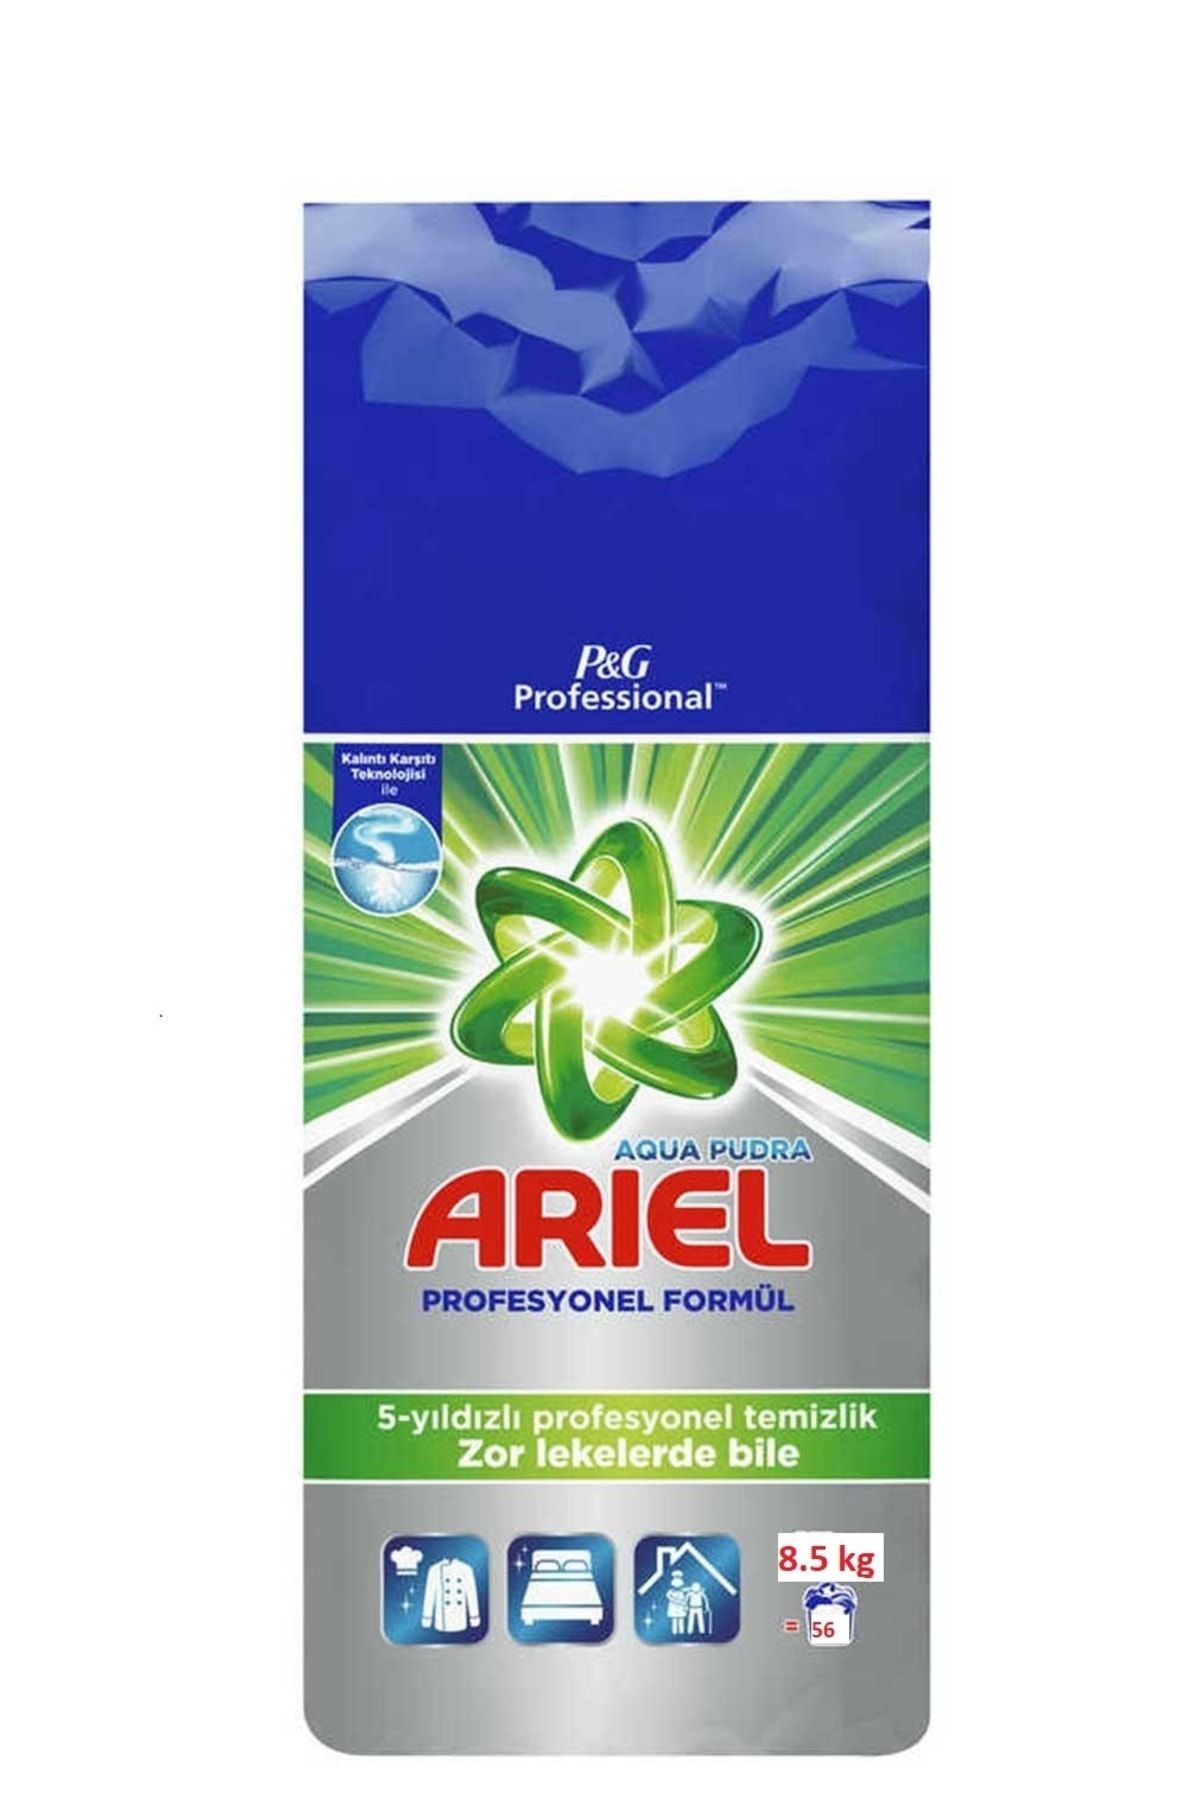 Ariel Professional Aqua Pudra Beyazlar Için Toz Çamaşır Deterjanı 8.5 Kg 56 Yıkama